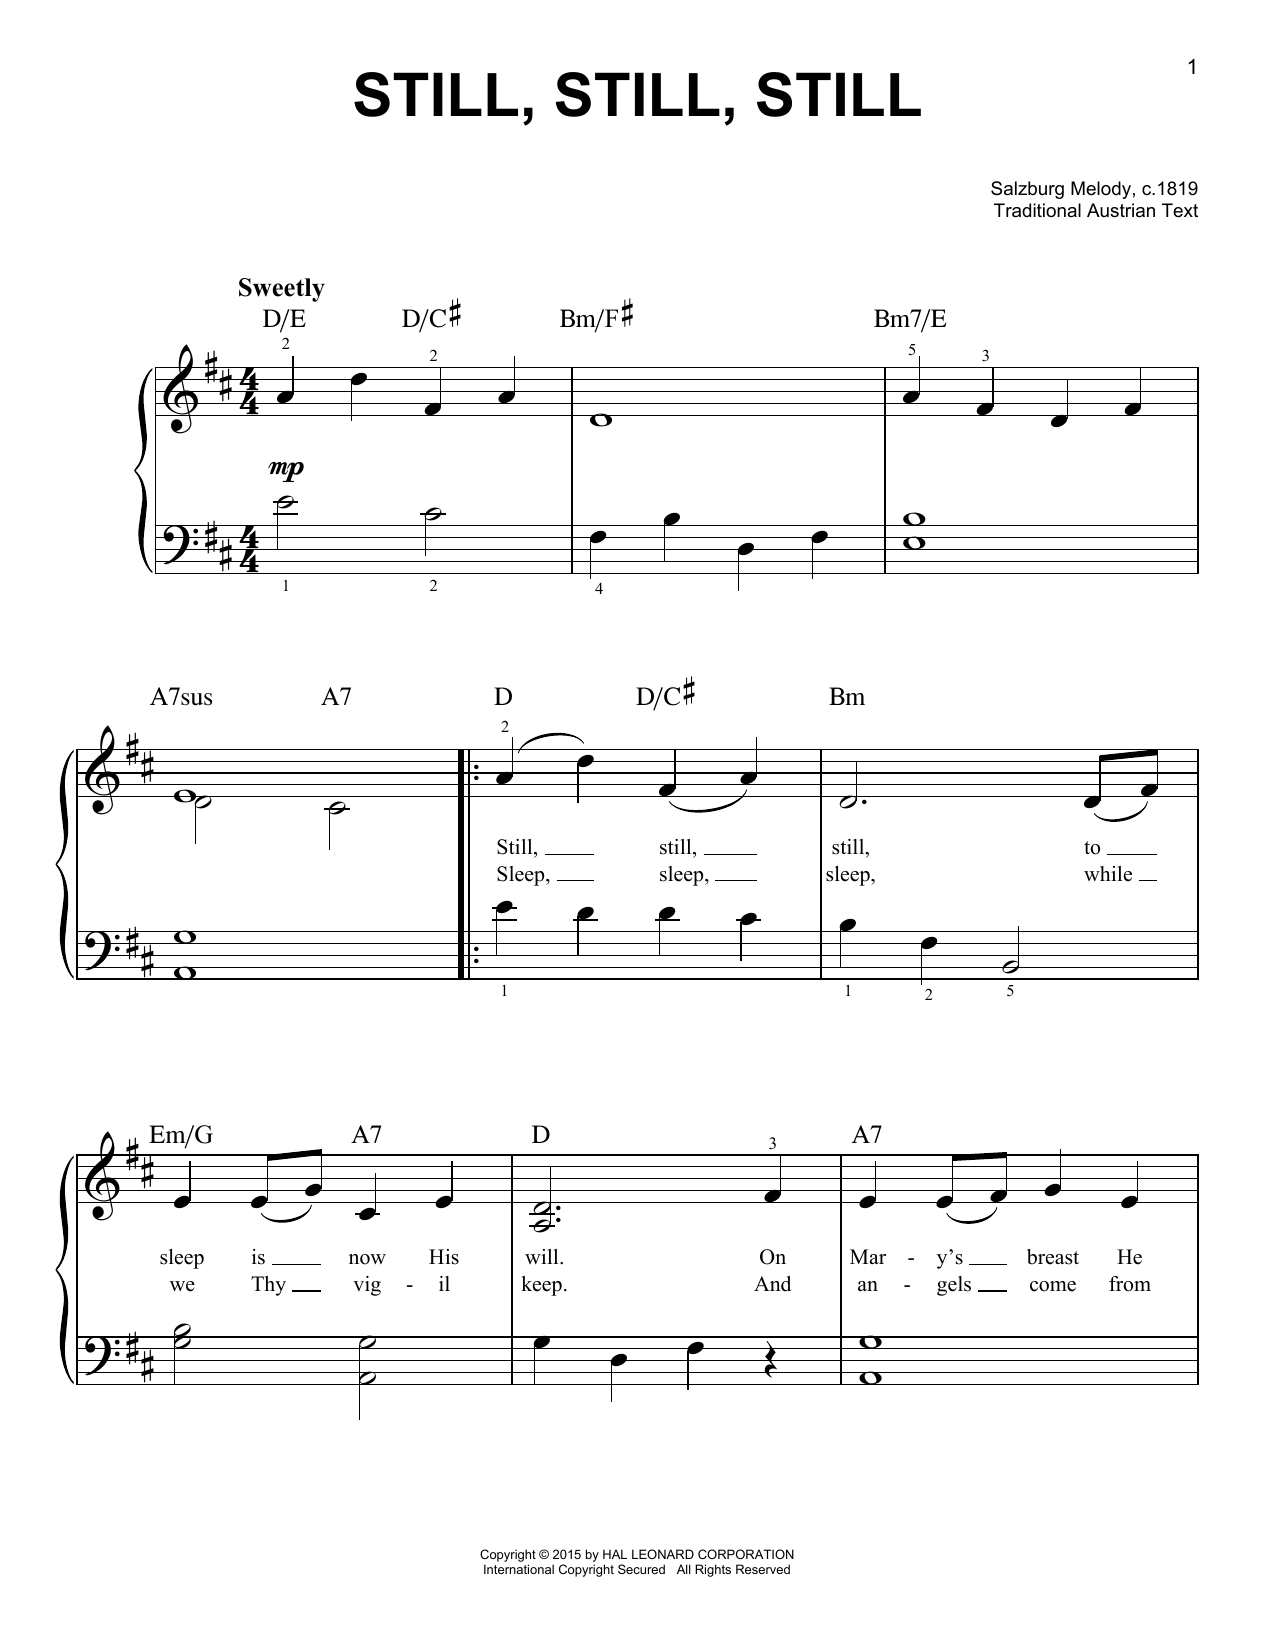 Salzburg Melody, c.1819 Still, Still, Still Sheet Music Notes & Chords for Trumpet Duet - Download or Print PDF